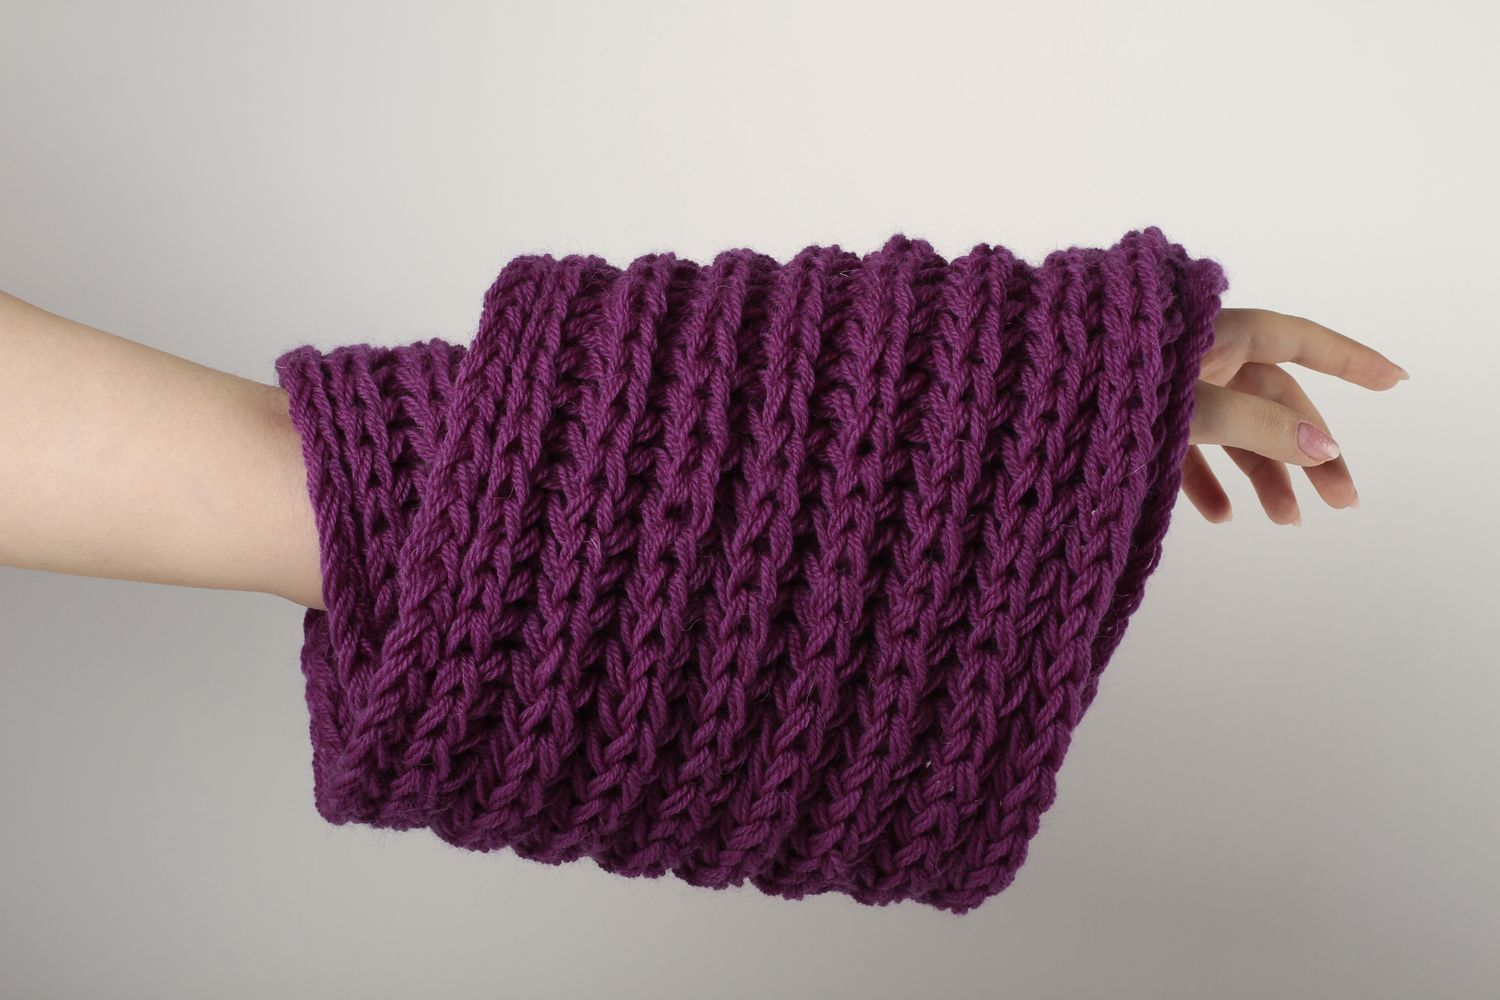 Écharpe violette faite main Vêtement femme tricot en laine Idée cadeau photo 1